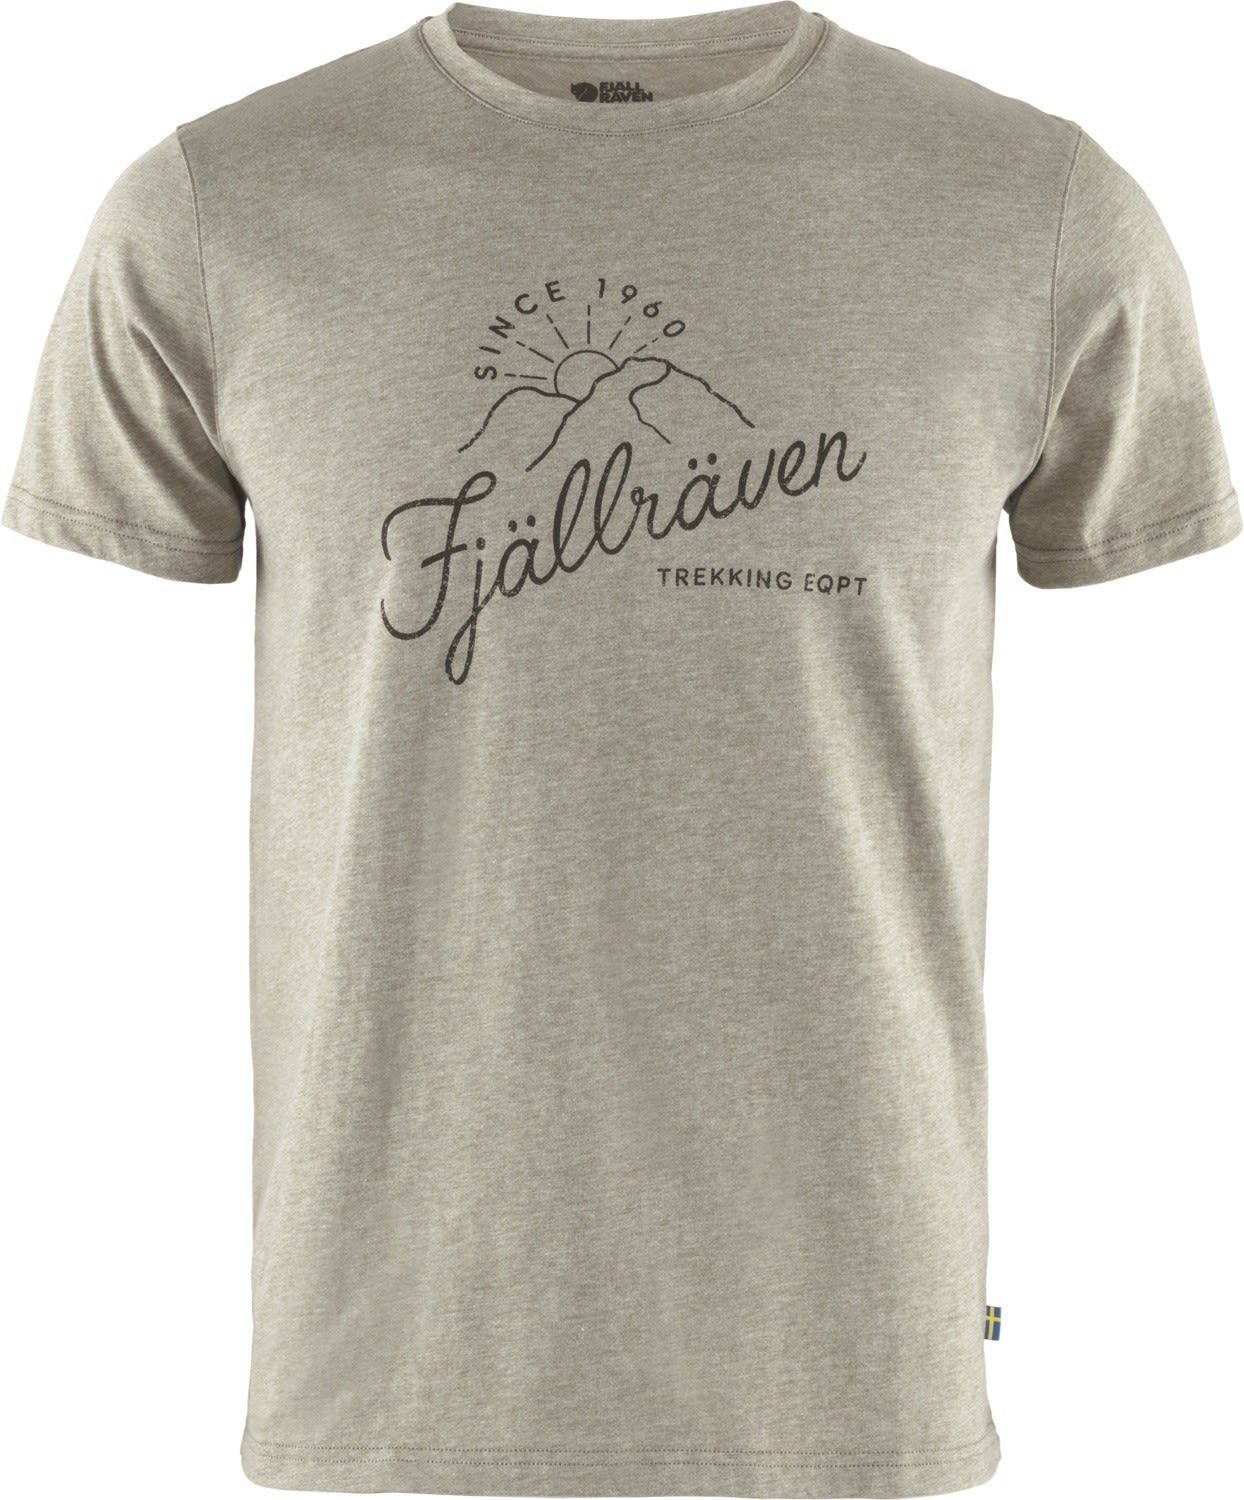 T-shirt Melange T-Shirt Sunrise Herren Green M Fjällräven Kurzarm-Shirt Light Fjällräven -